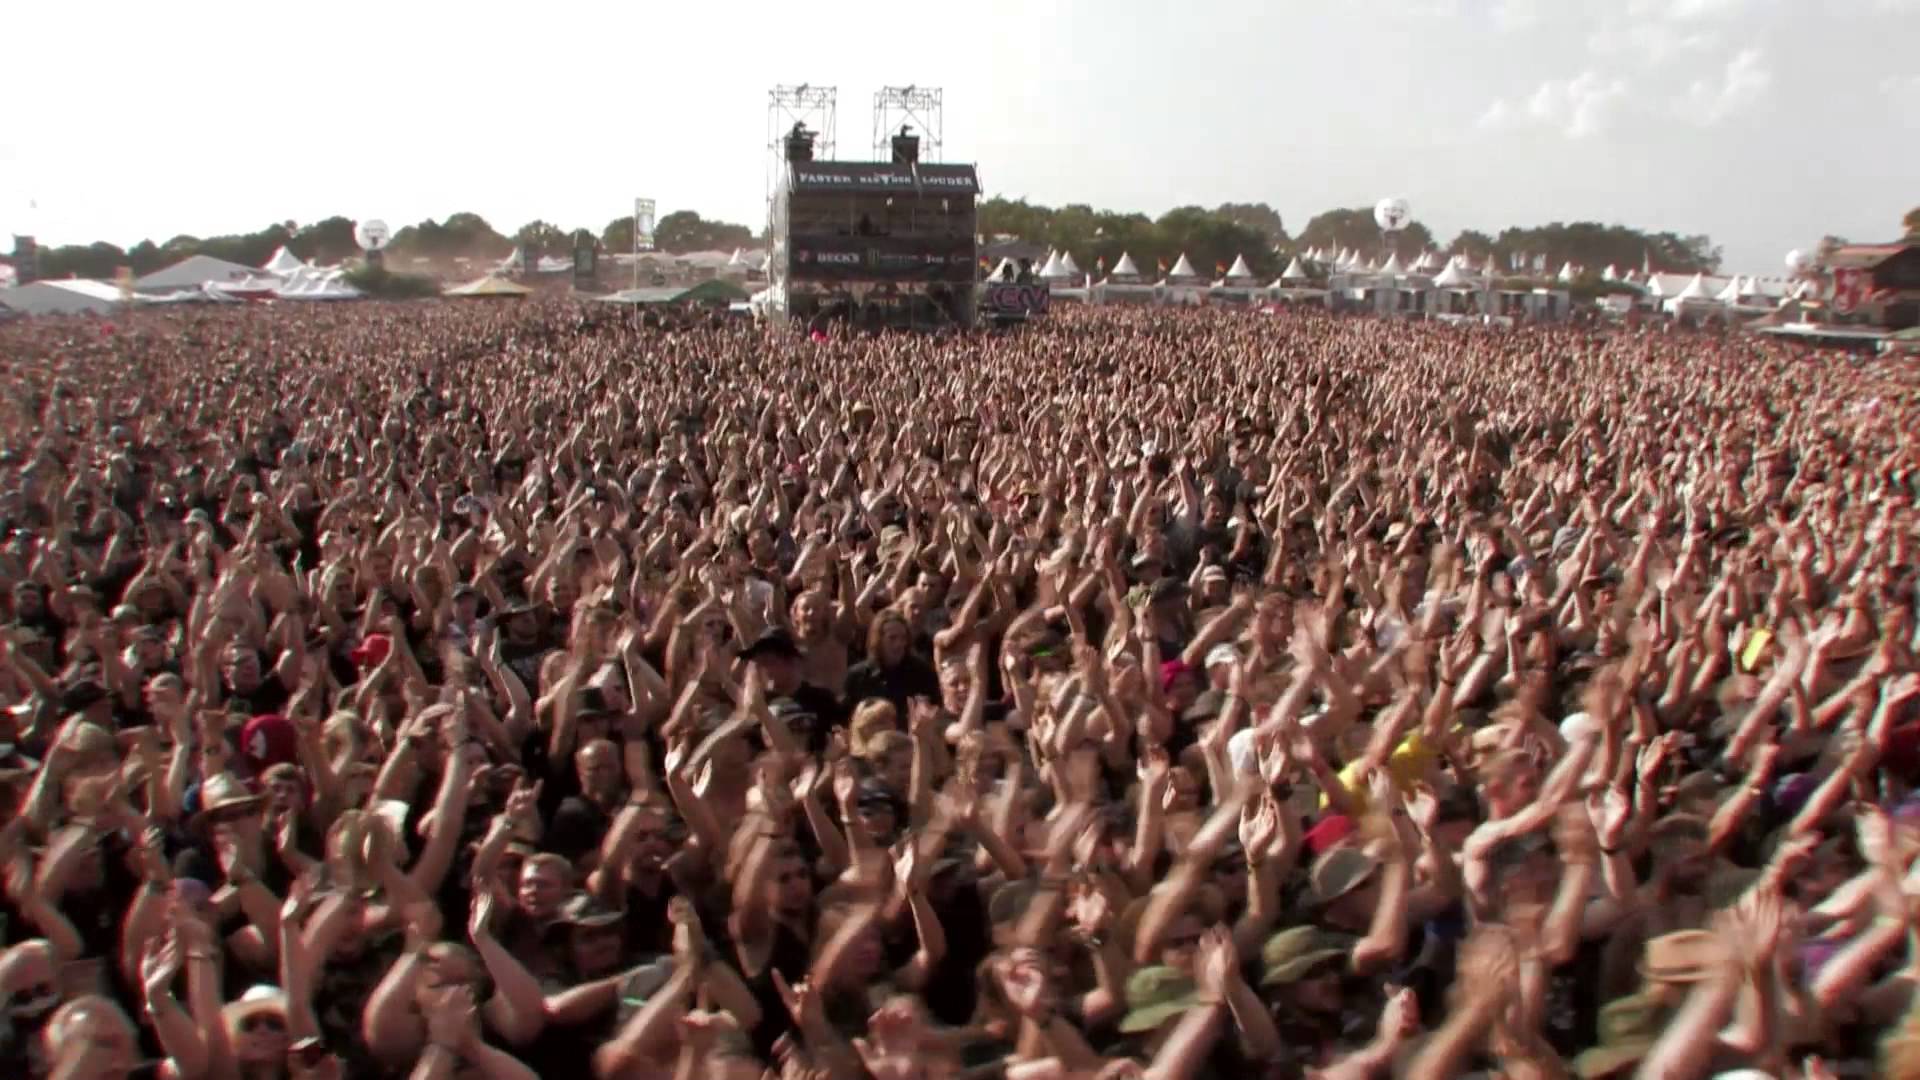 Szene aus dem YouTube Video "WOA 2015 - New Bands Trailer - September 2014", Quelle: Wacken Open Air/YouTube Wacken Judas Priest